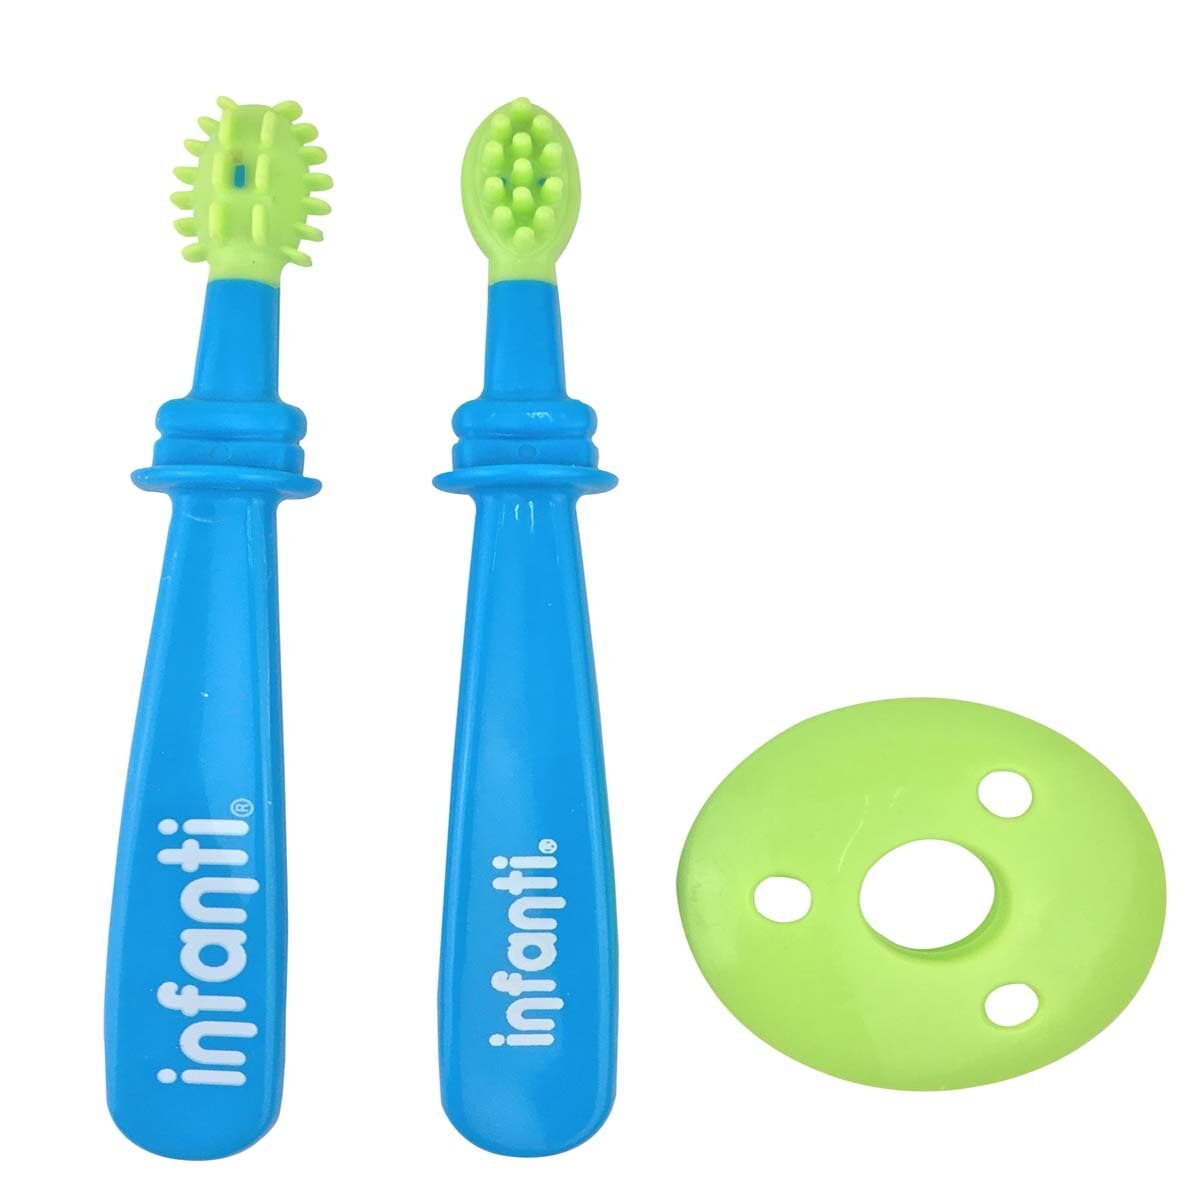 Set de Higiene Dental de 3 Piezas Azul Infanti